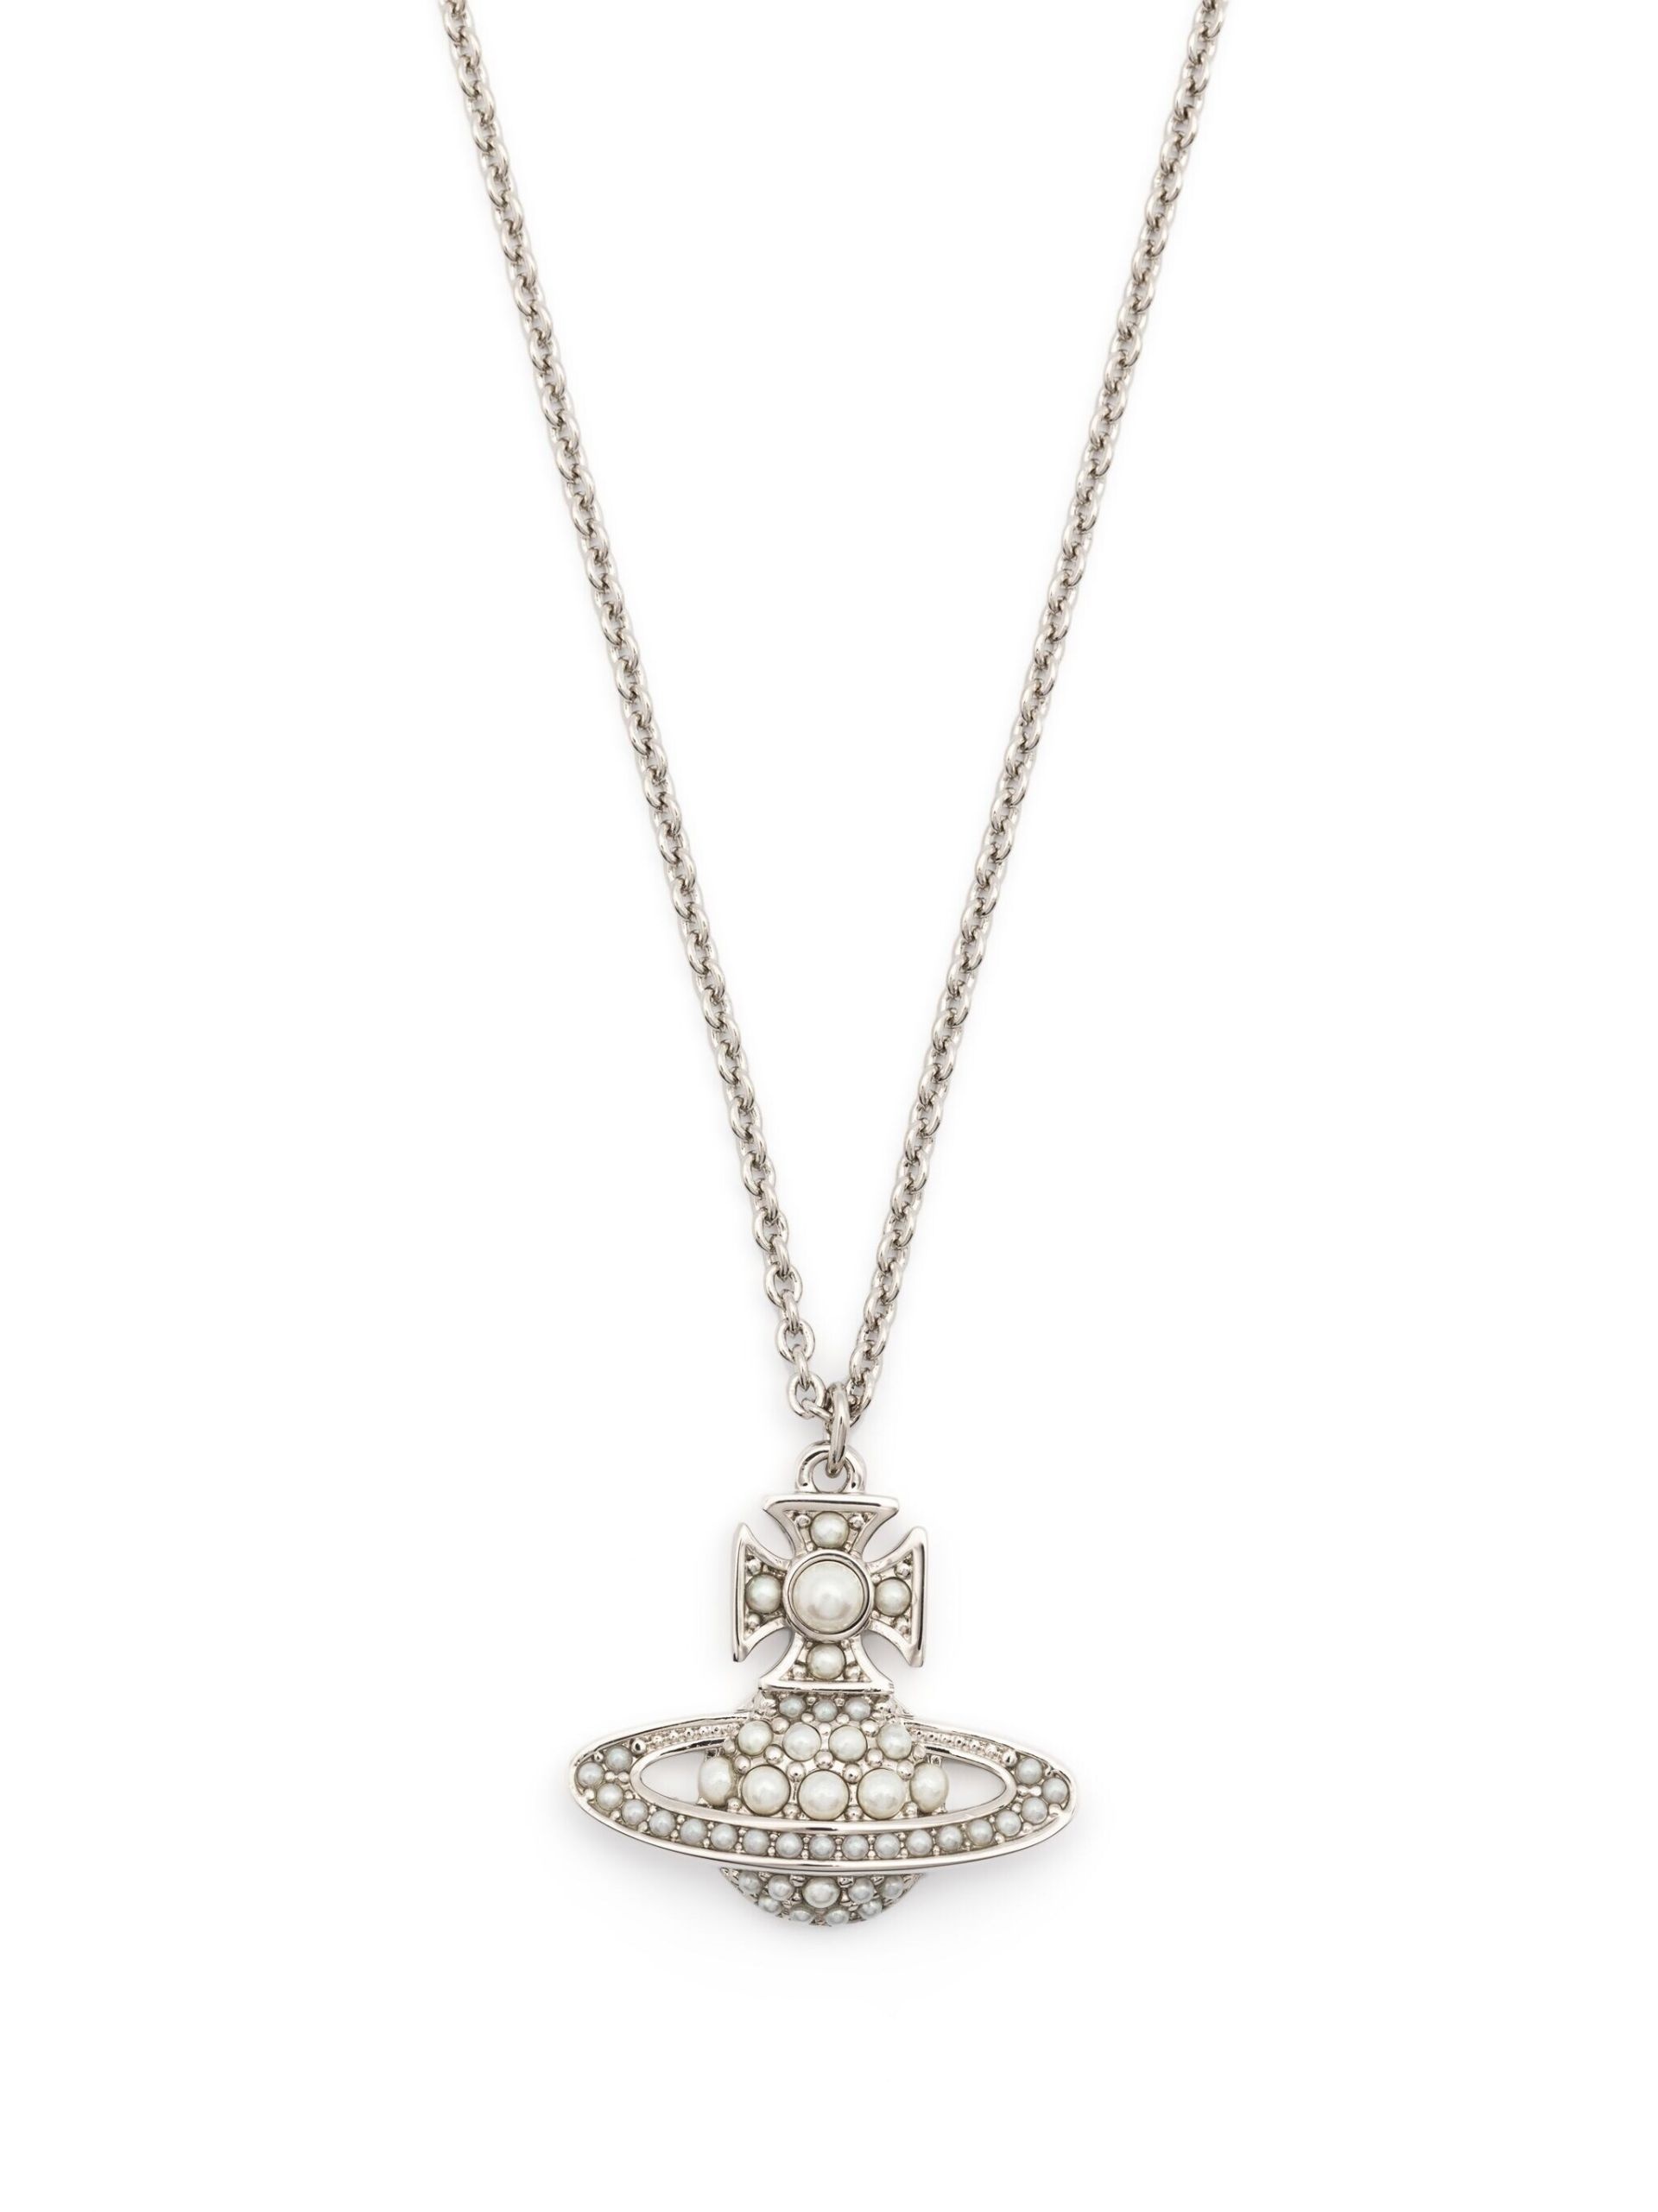 silver-tone Luzia pendant necklace - 3